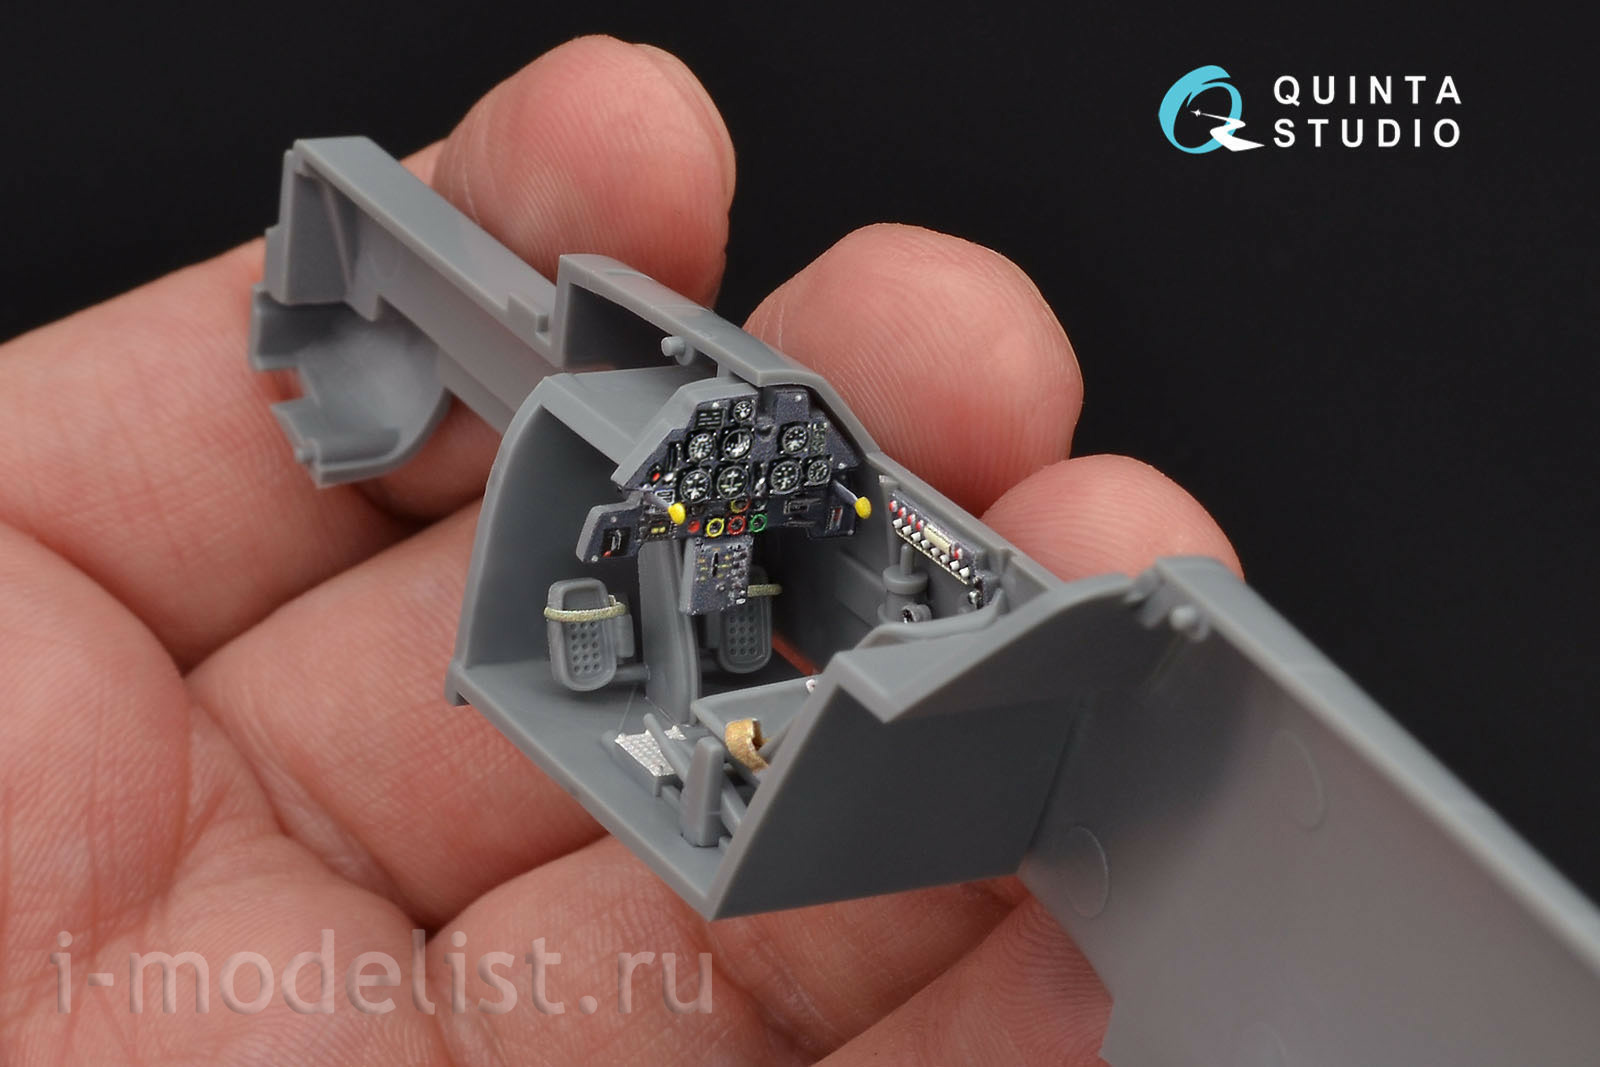 QD48097 Quinta Studio 1/48 3D Декаль интерьера кабины Bf 109E (для модели Tamiya)